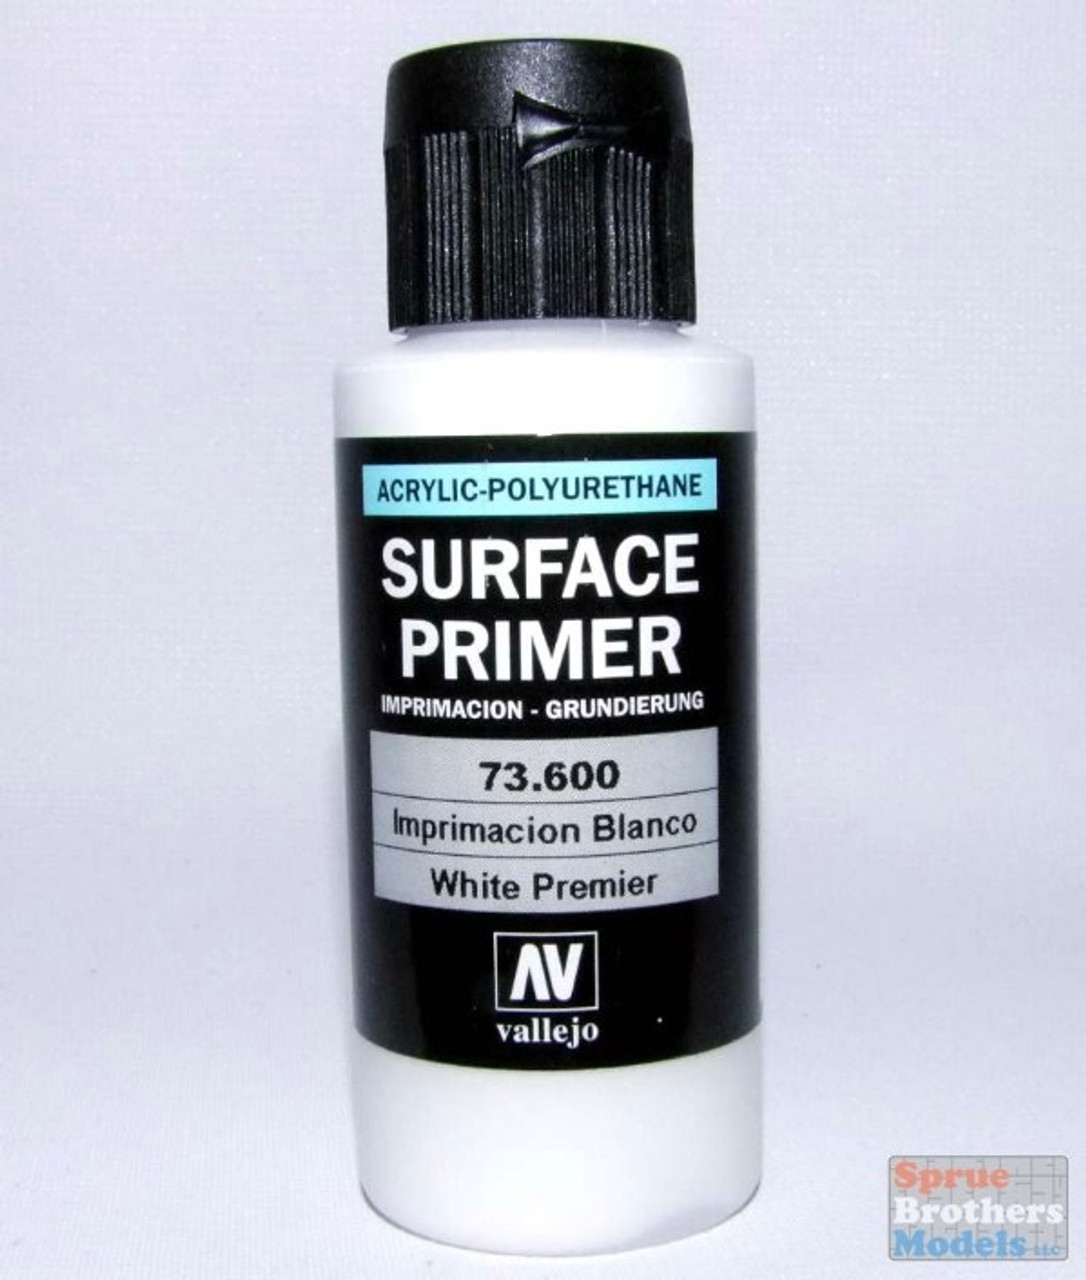 Primer Black 200ml - Primer - Vallejo - VAL74602